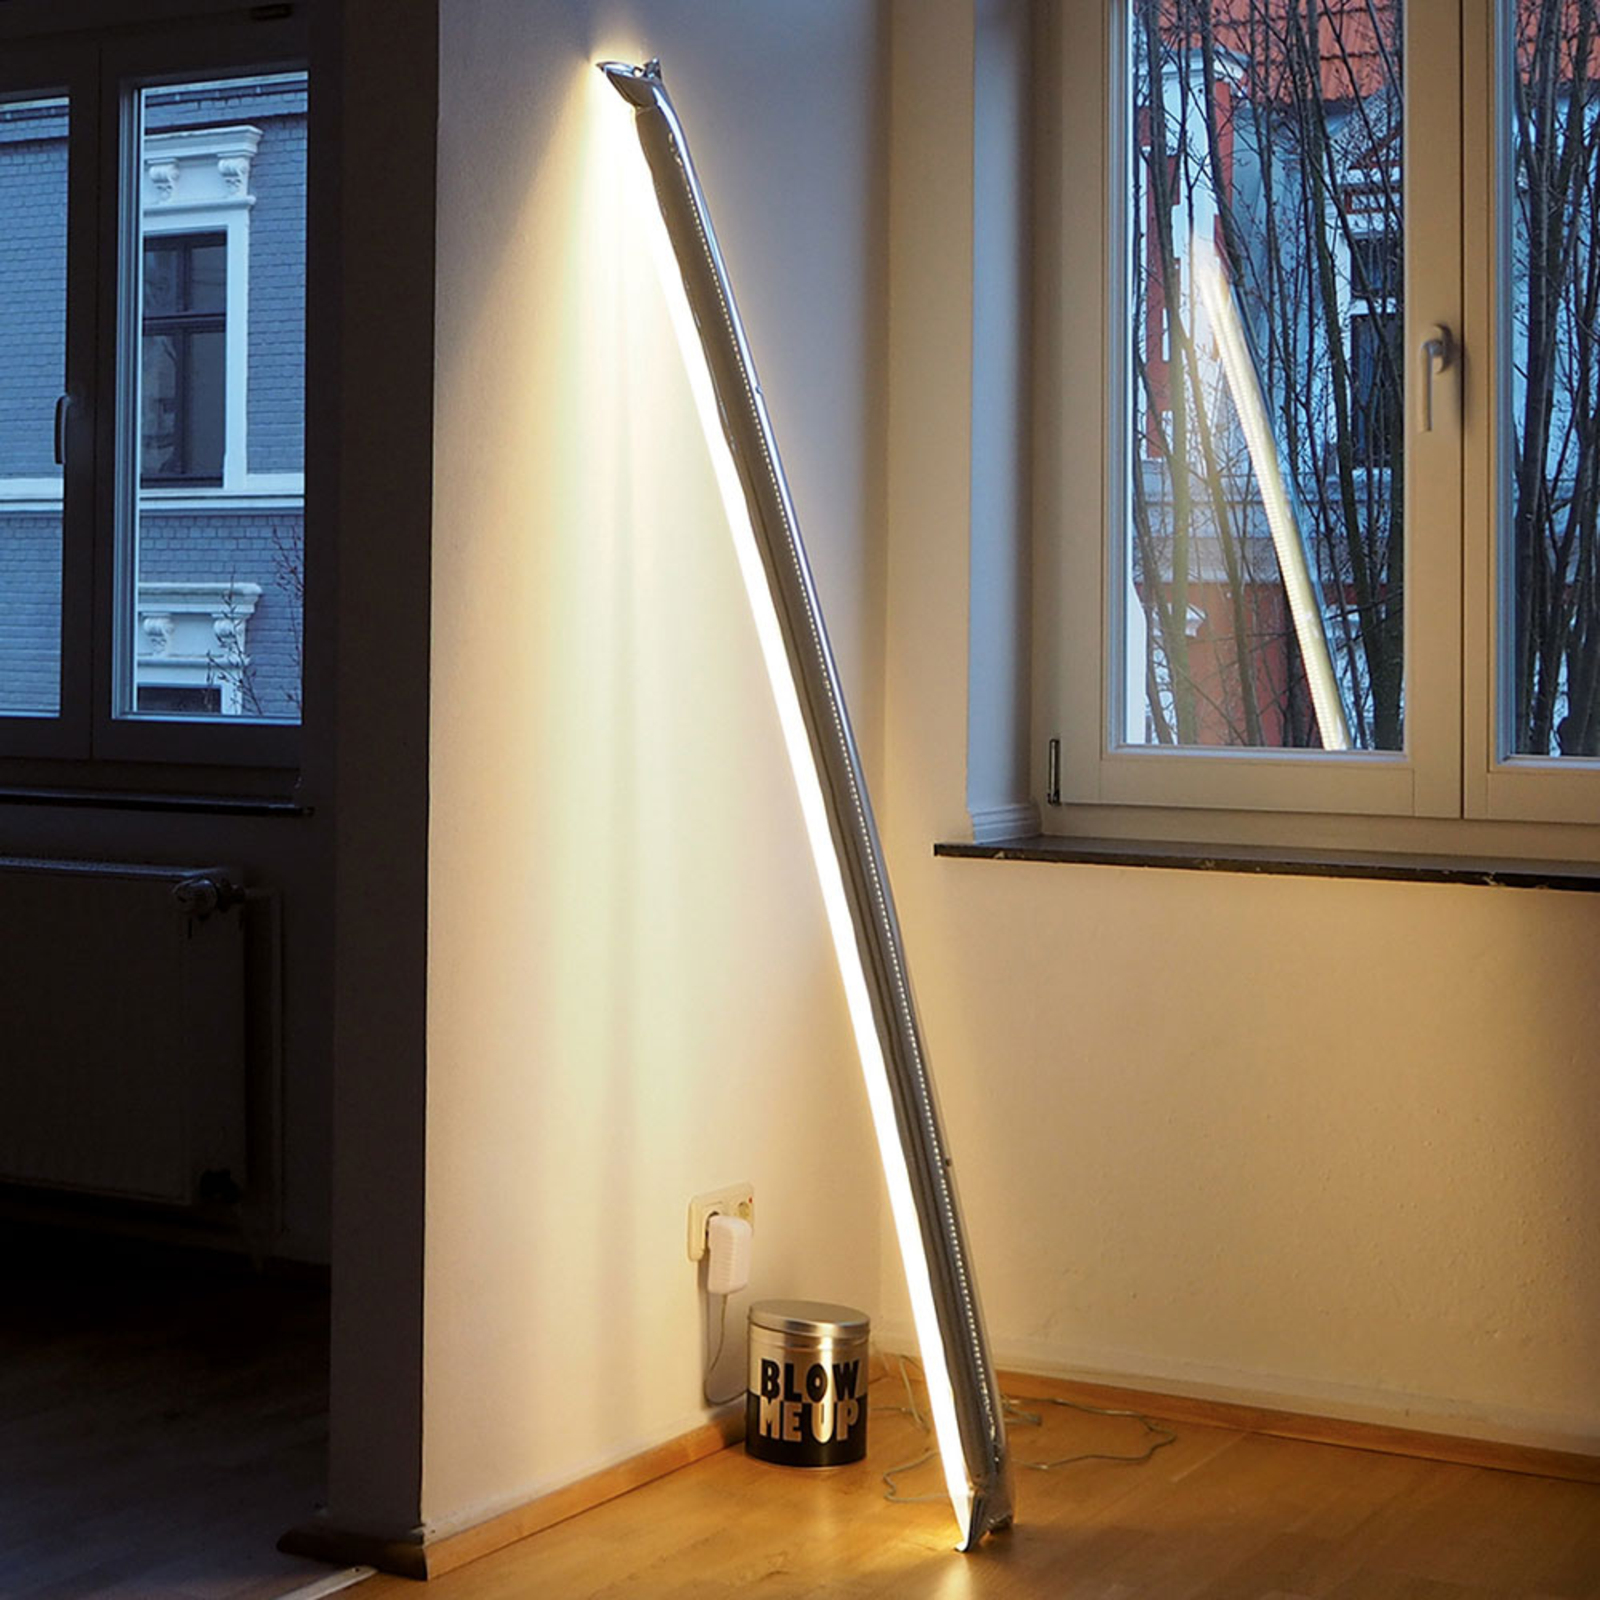 Ingo Maurer Blow Me Up LED floor lamp 120cm silver